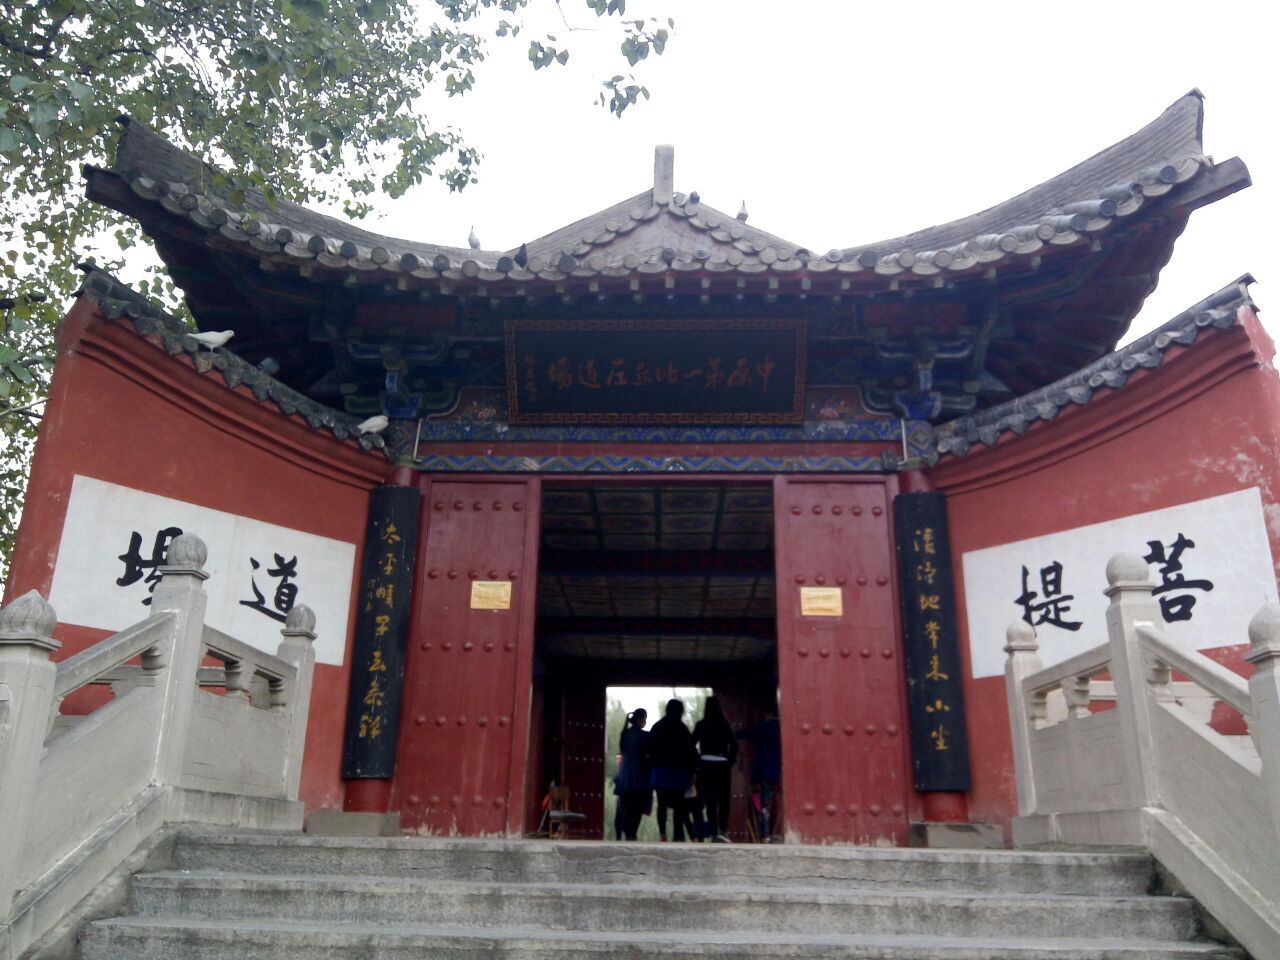 大理寂照庵：中国最美寺庙和“最文艺的尼姑庵” - 知乎